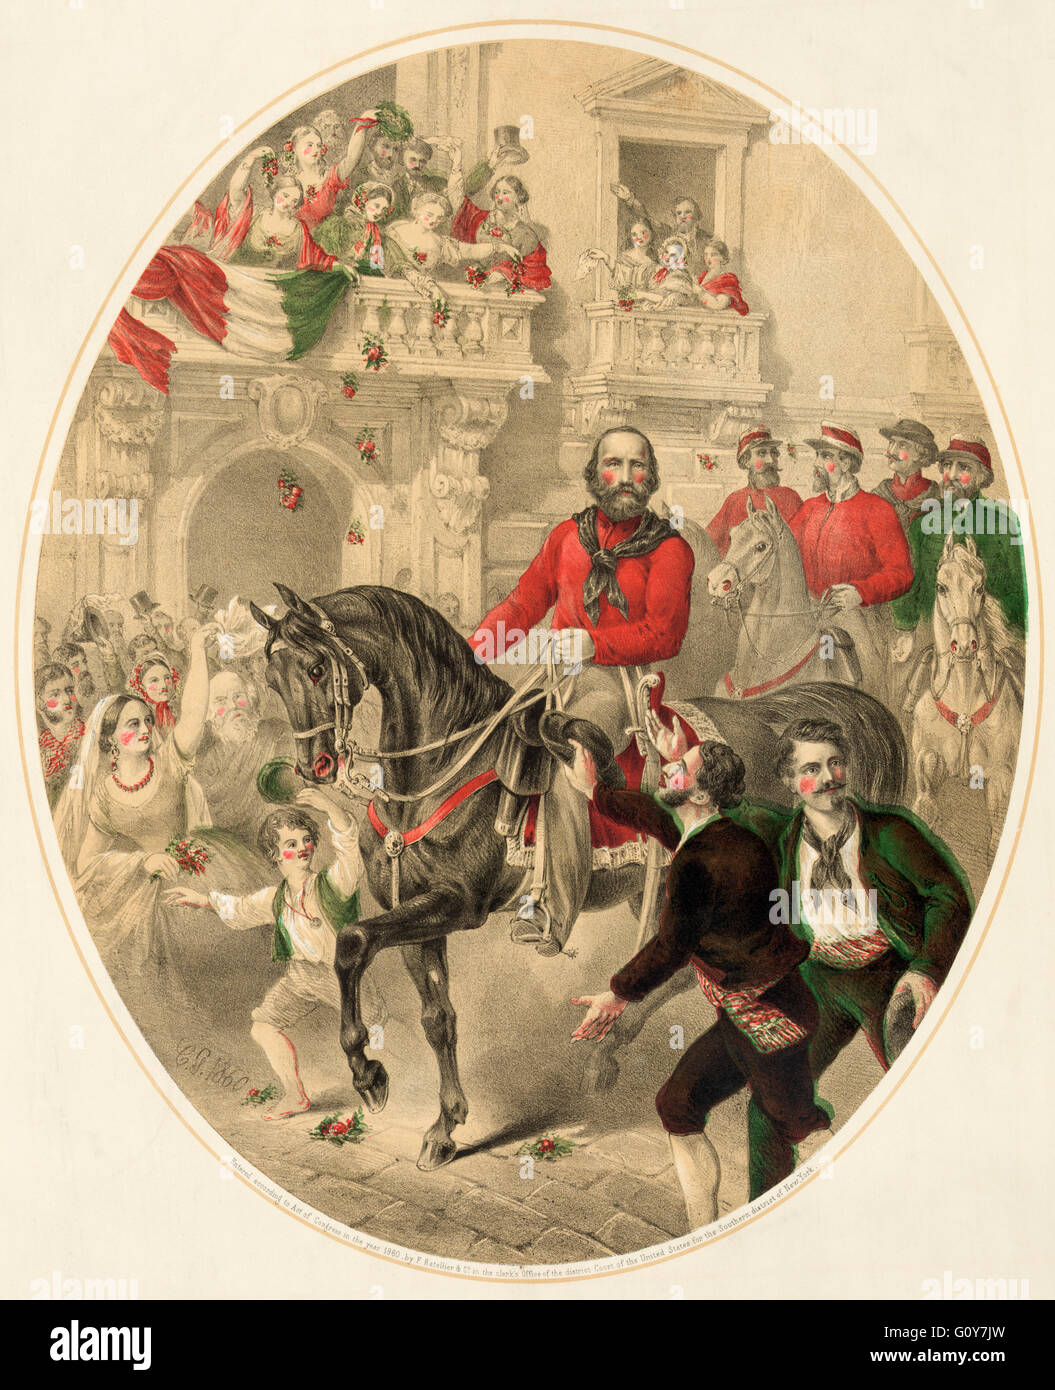 Romantisierte Version von Garibaldi in Naples am 7. September 1860.  In der Tat eingegeben Garibaldi Naples mit dem Zug.  Nach einem zeitgenössischen Farblitho in den Vereinigten Staaten veröffentlicht.  Giuseppe Garibaldi, 1807-1882. 19. Jahrhunderts italienische militärische und politische Abbildung des Risorgimento. Stockfoto